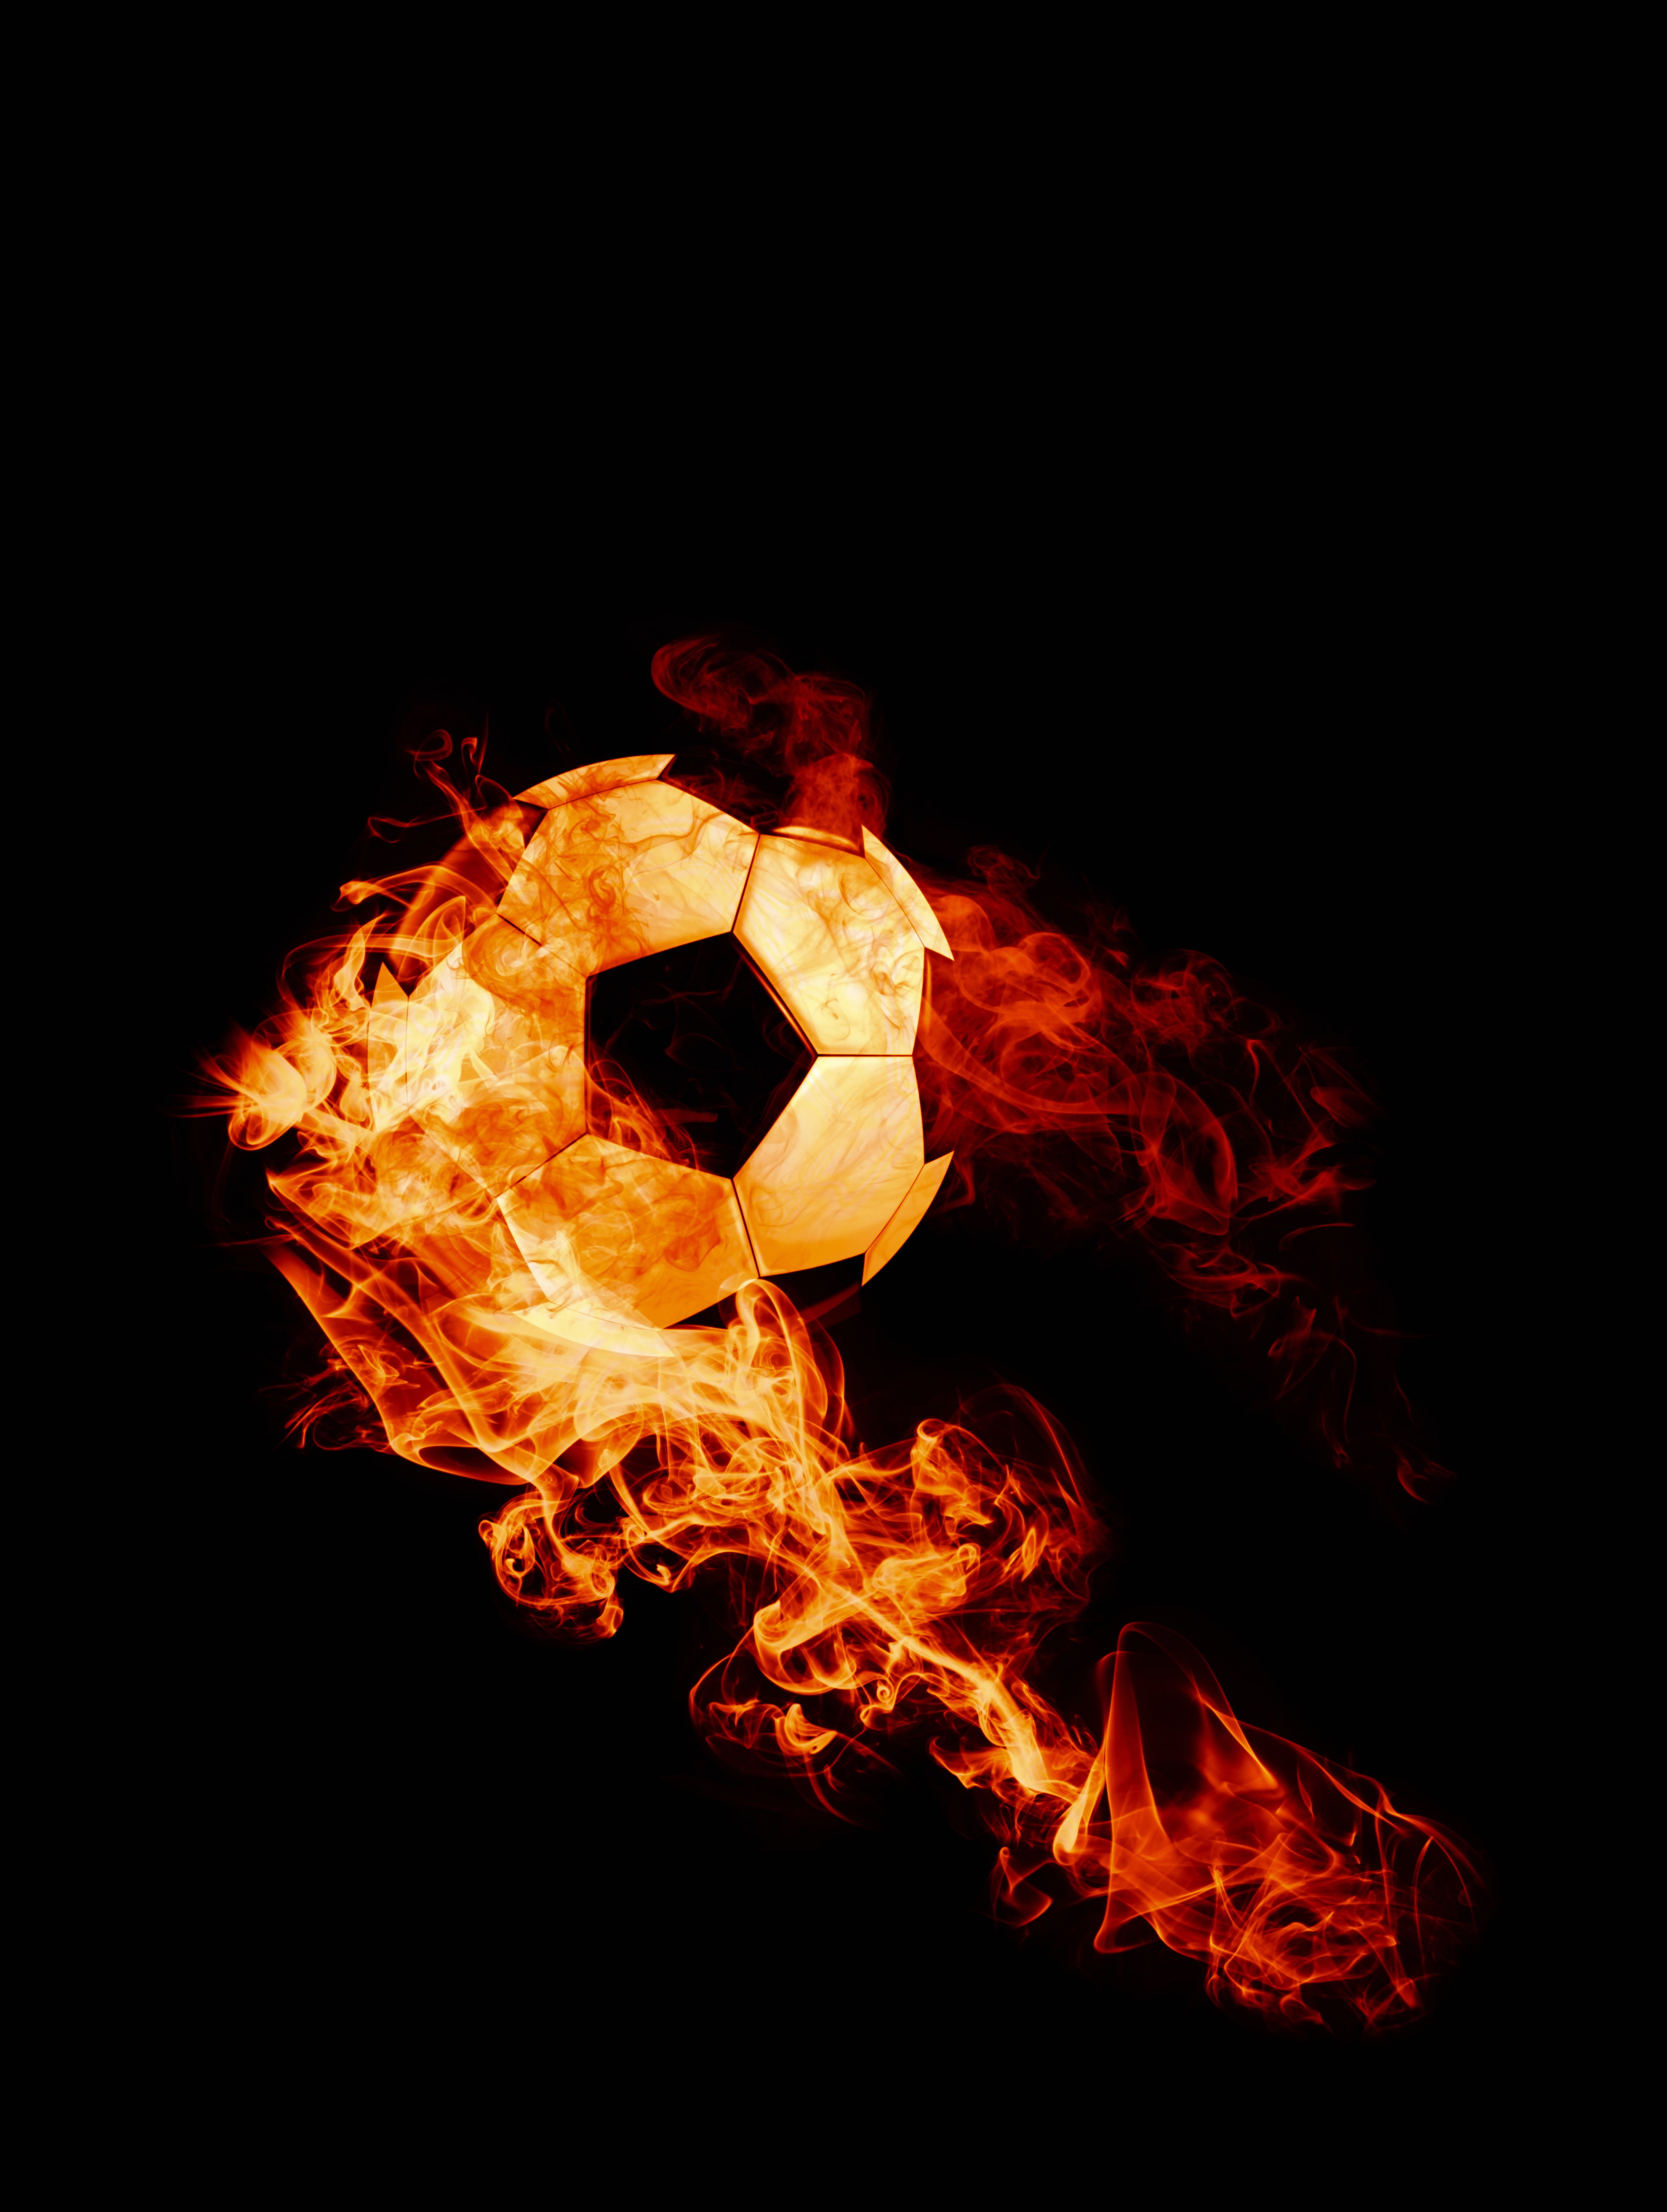 flaming soccer ball clip art, fire, football, dark background